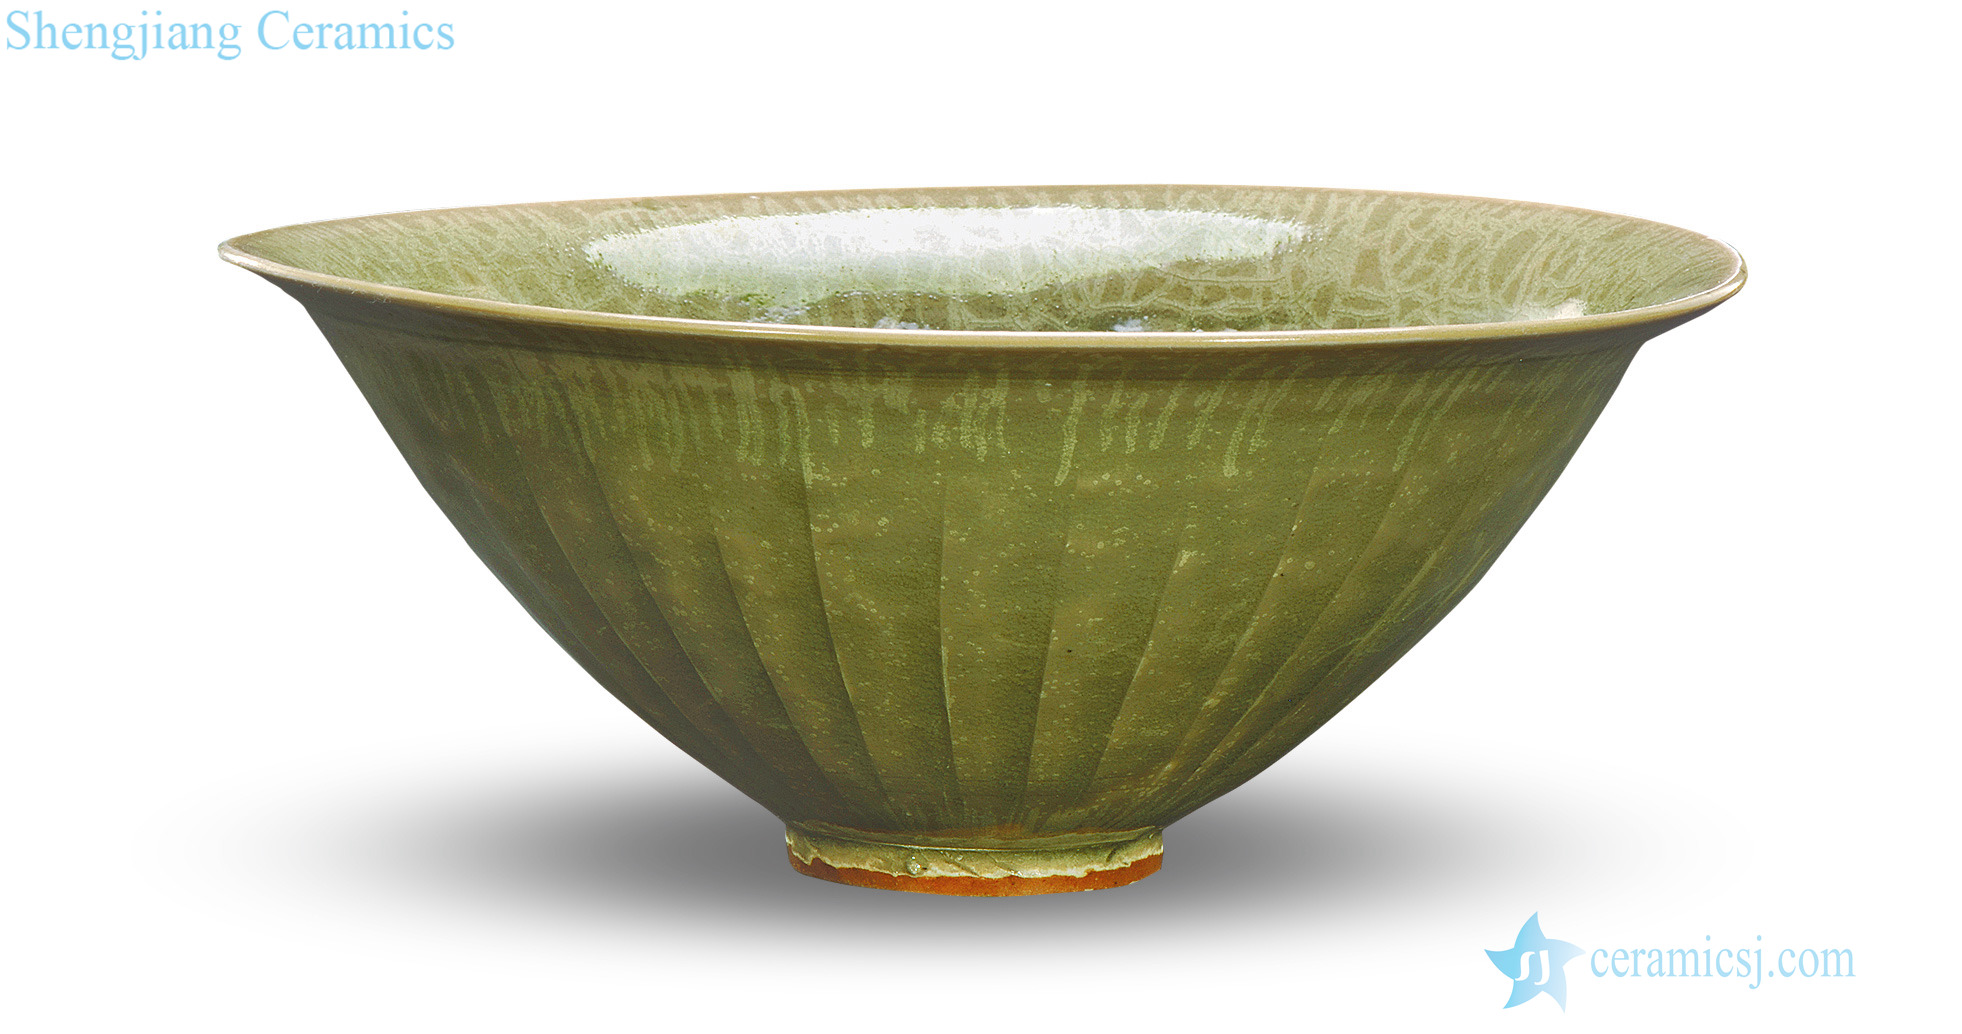 yuan Yao state kiln peony green-splashed bowls